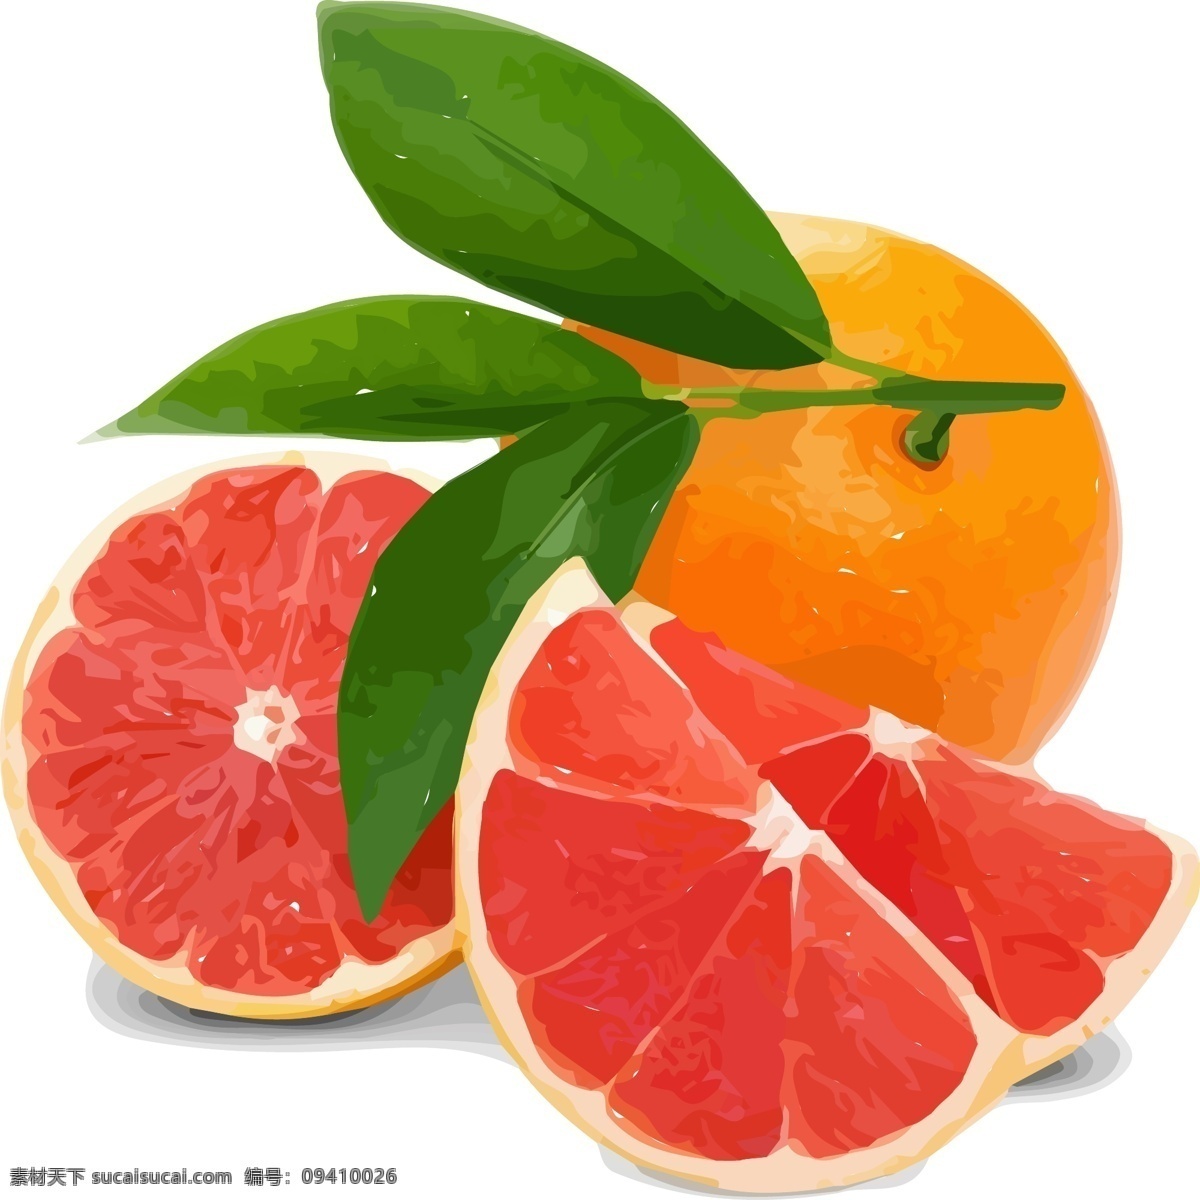 西 柚 橙子 水果 插画 手绘 西柚 水果素材 图案